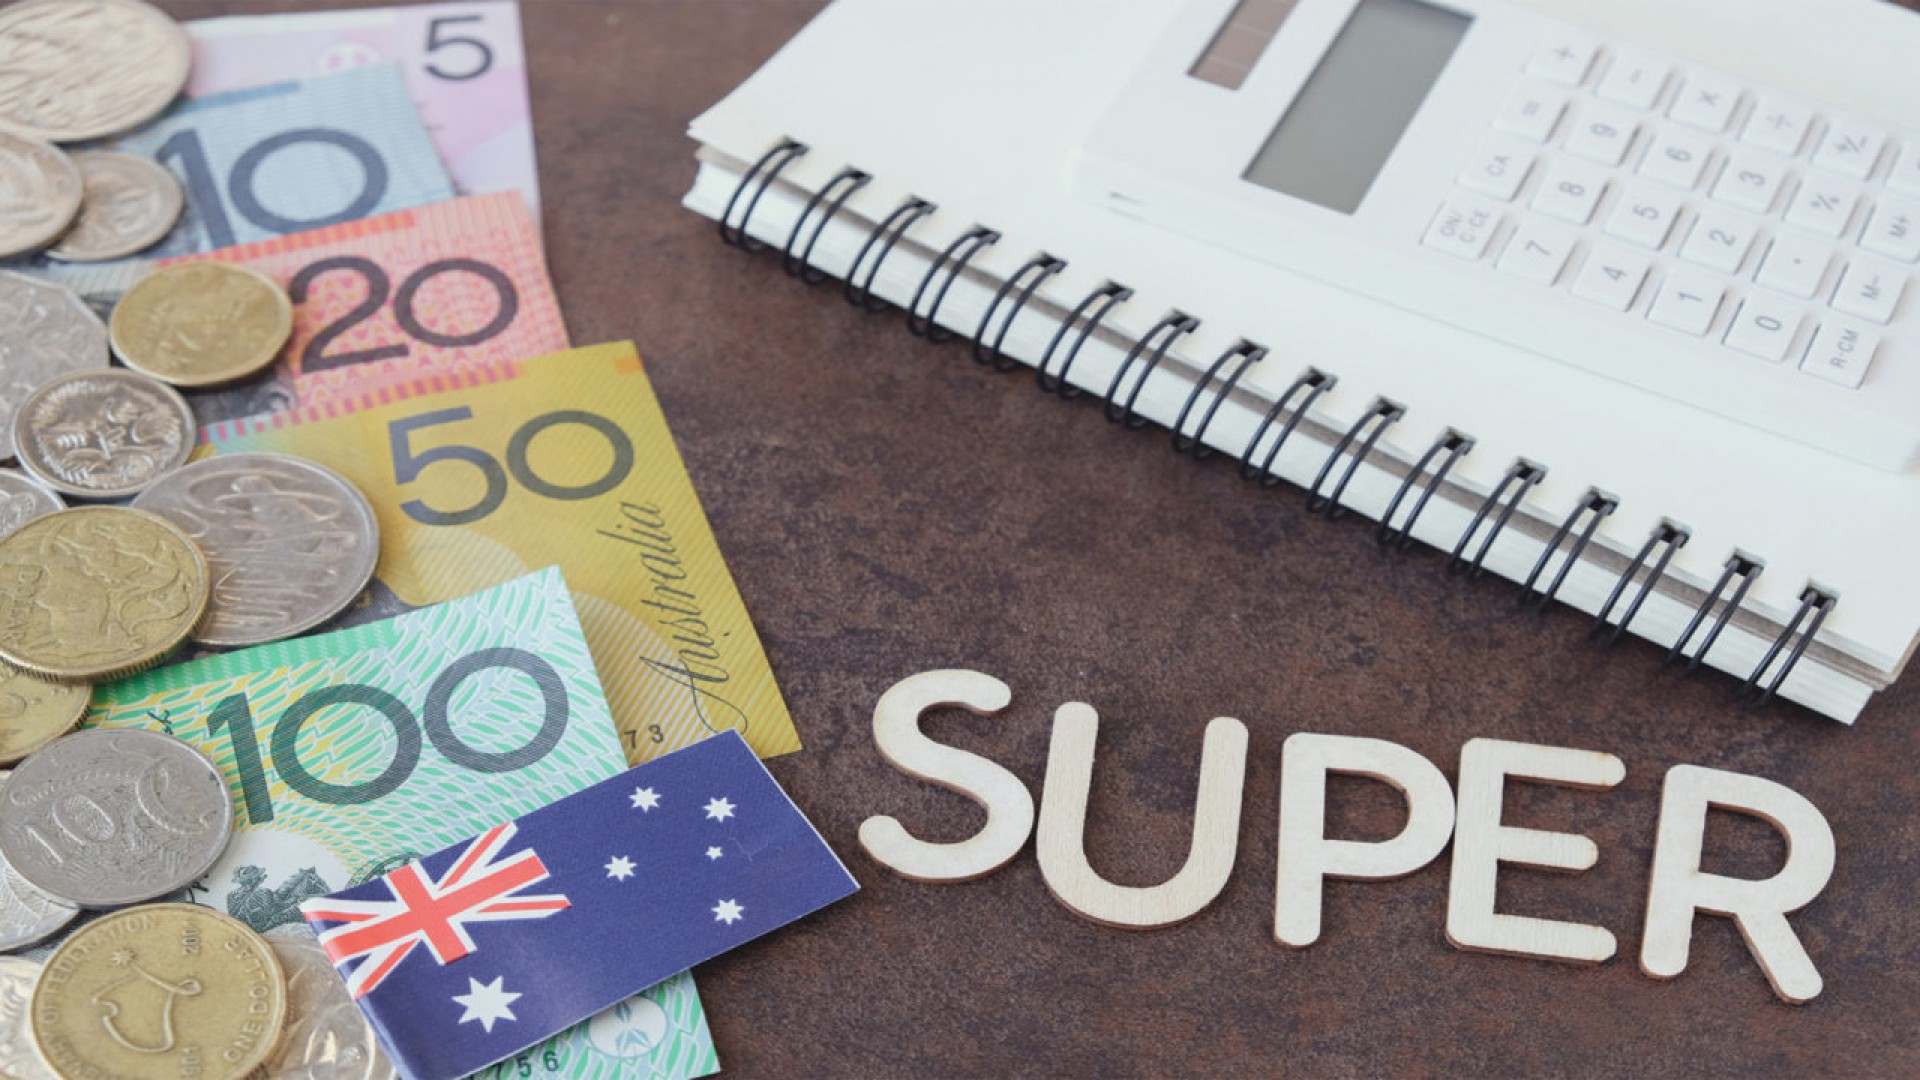 Du học Úc mất bao nhiêu tiền? Tổng chi phí tốn khoảng bao nhiêu?